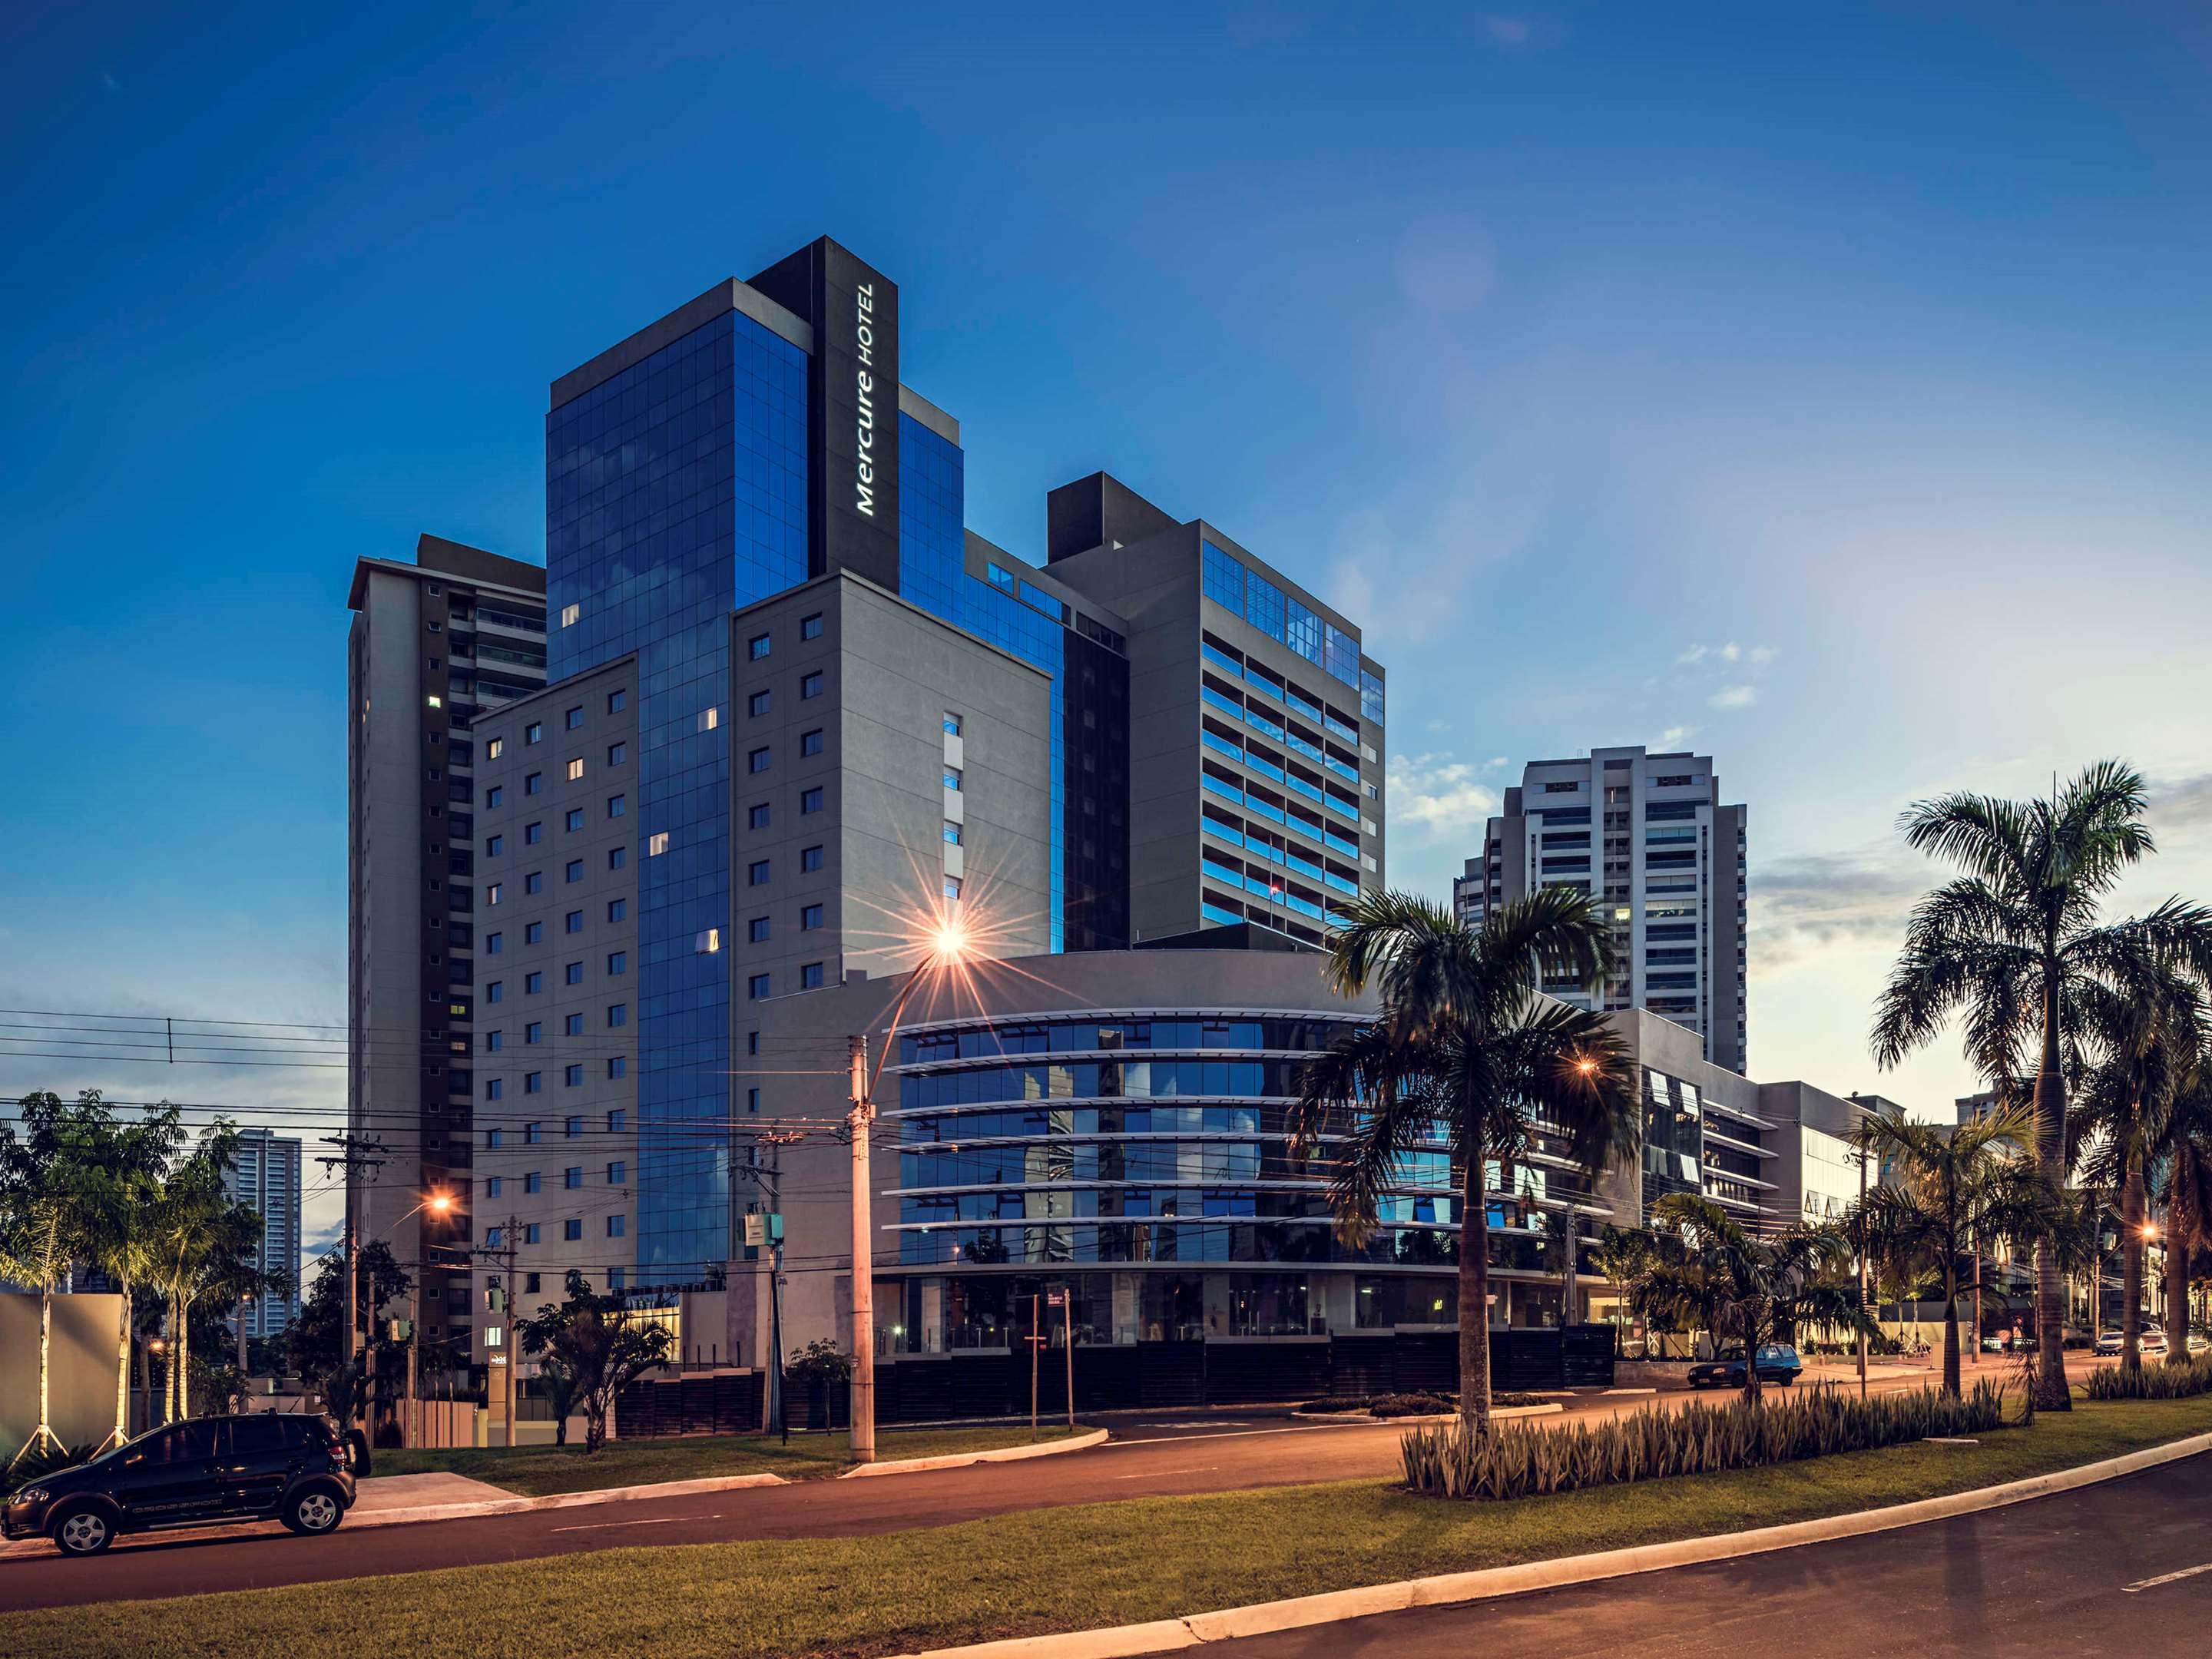 Matiz Vilaboim Ribeirao Preto Hotel - Deals, Photos & Reviews